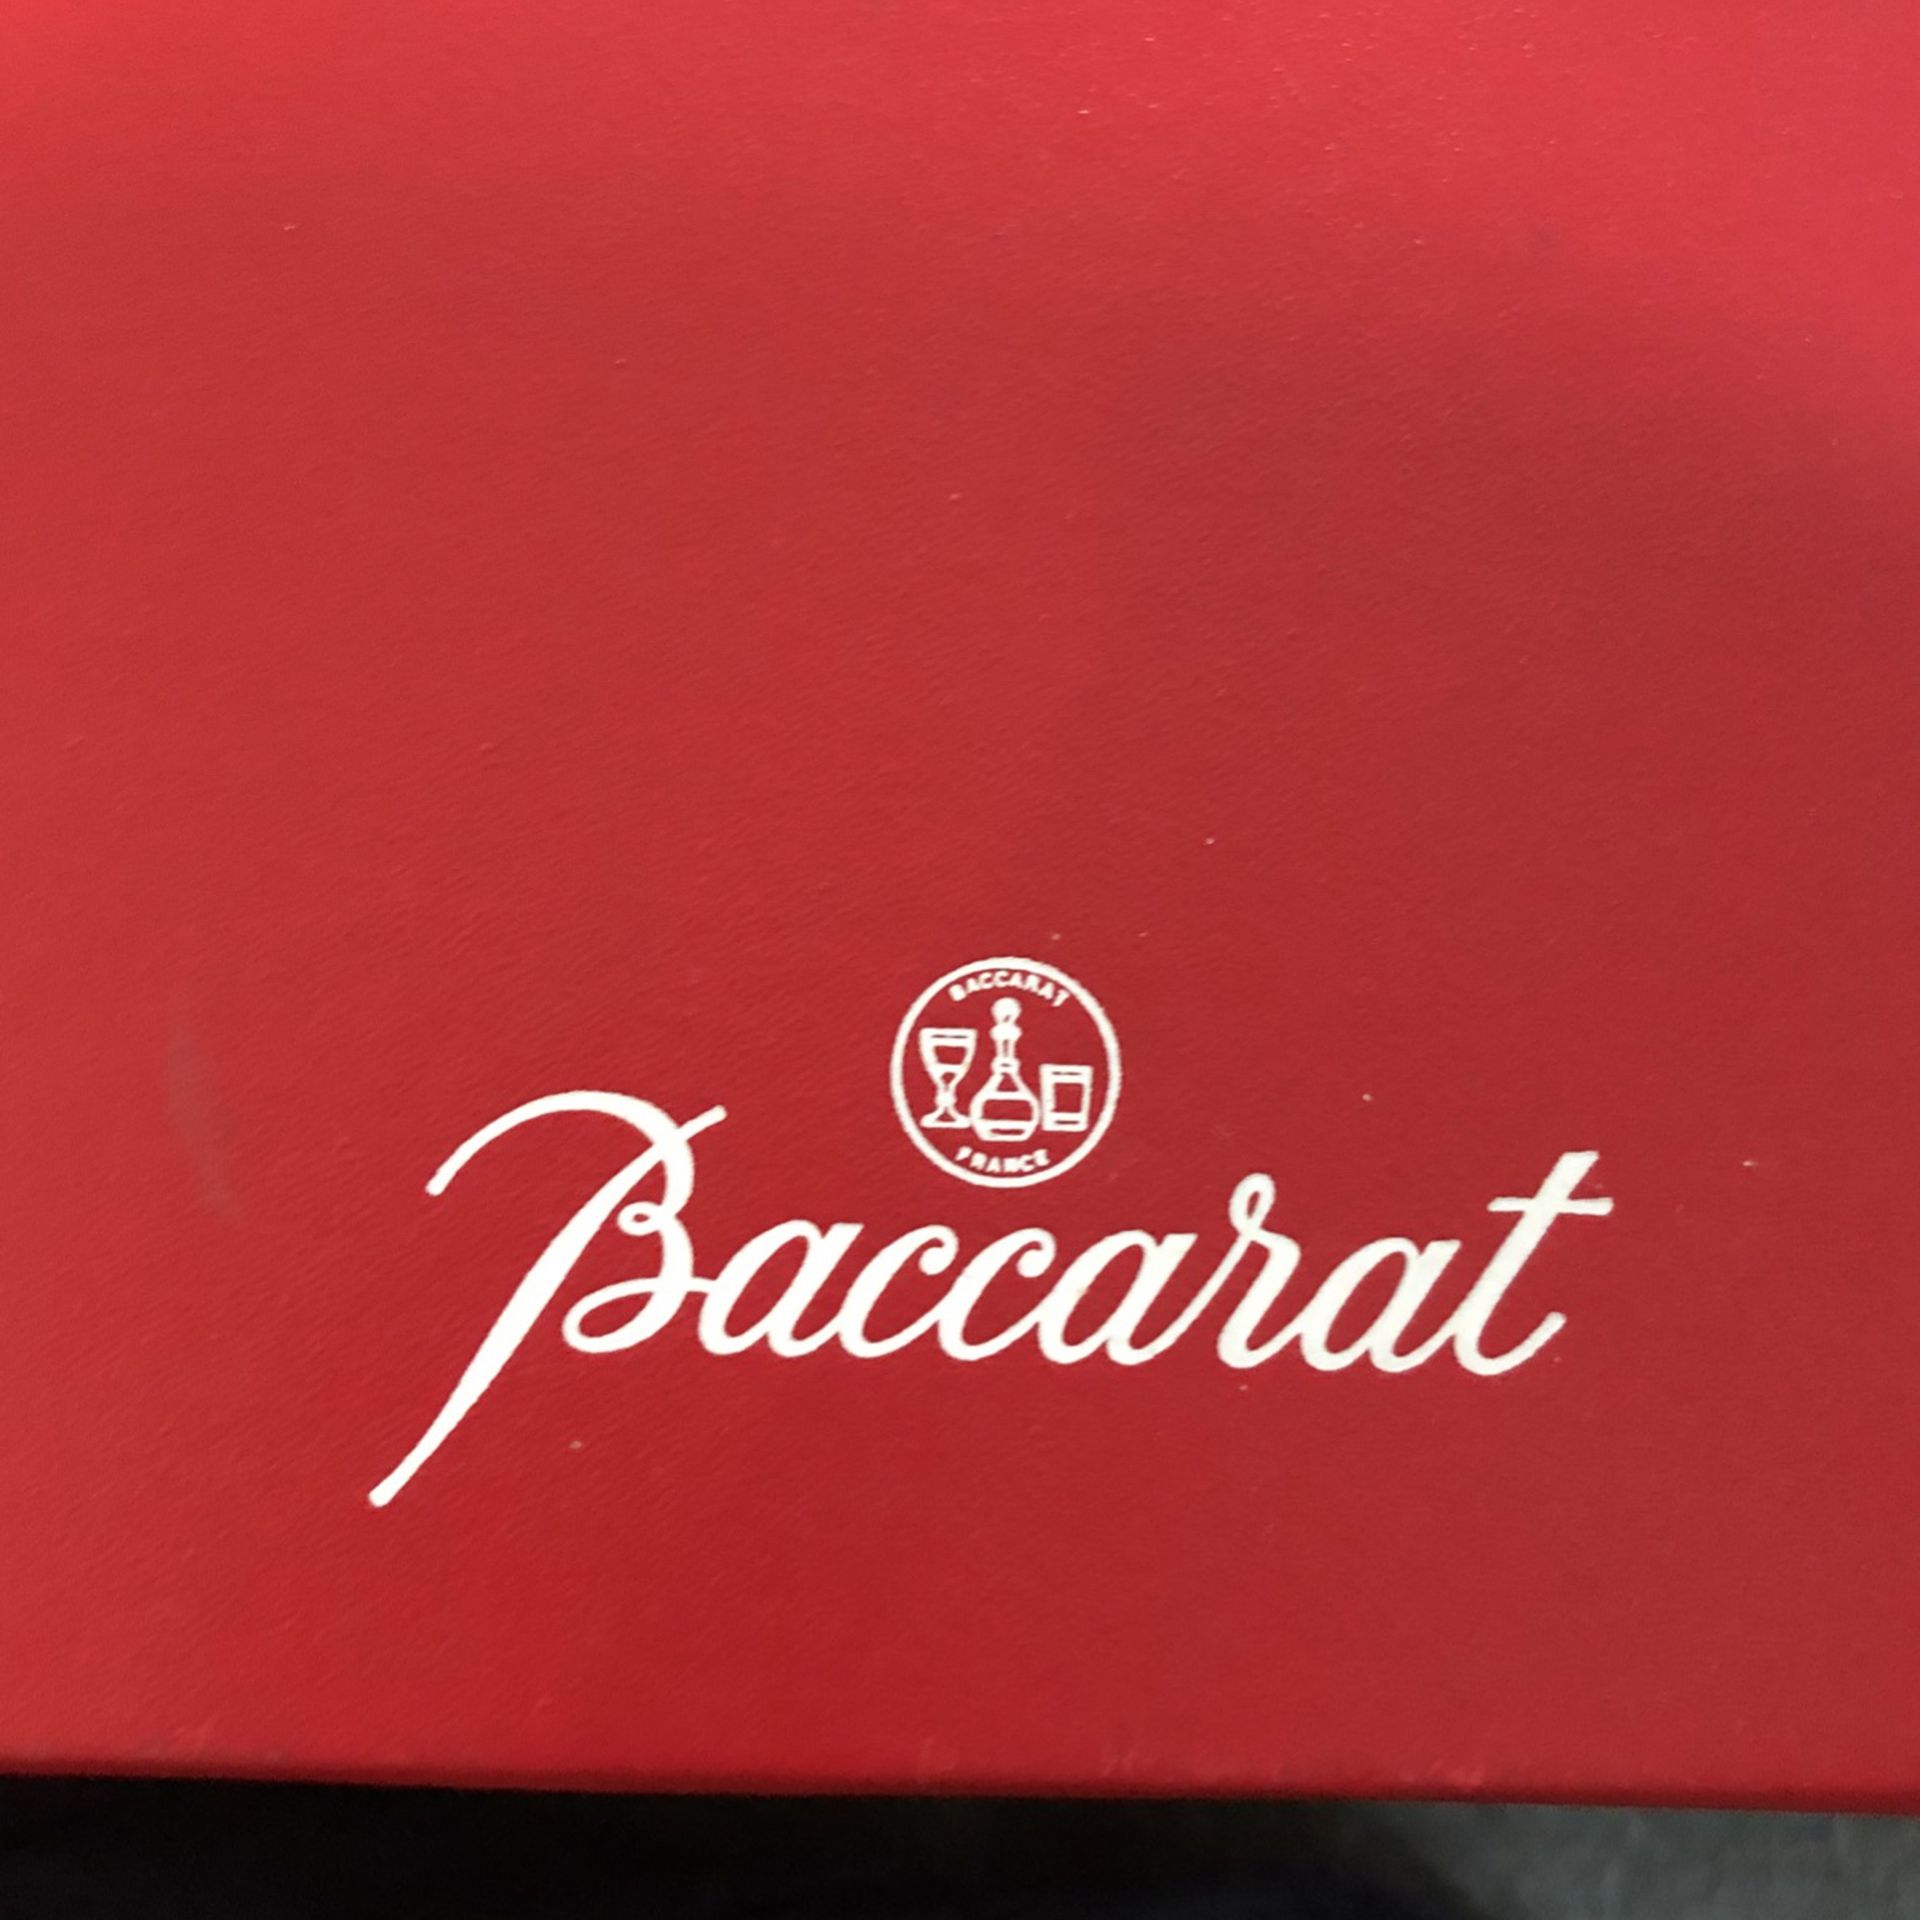 Baccarat Vintage Glass 